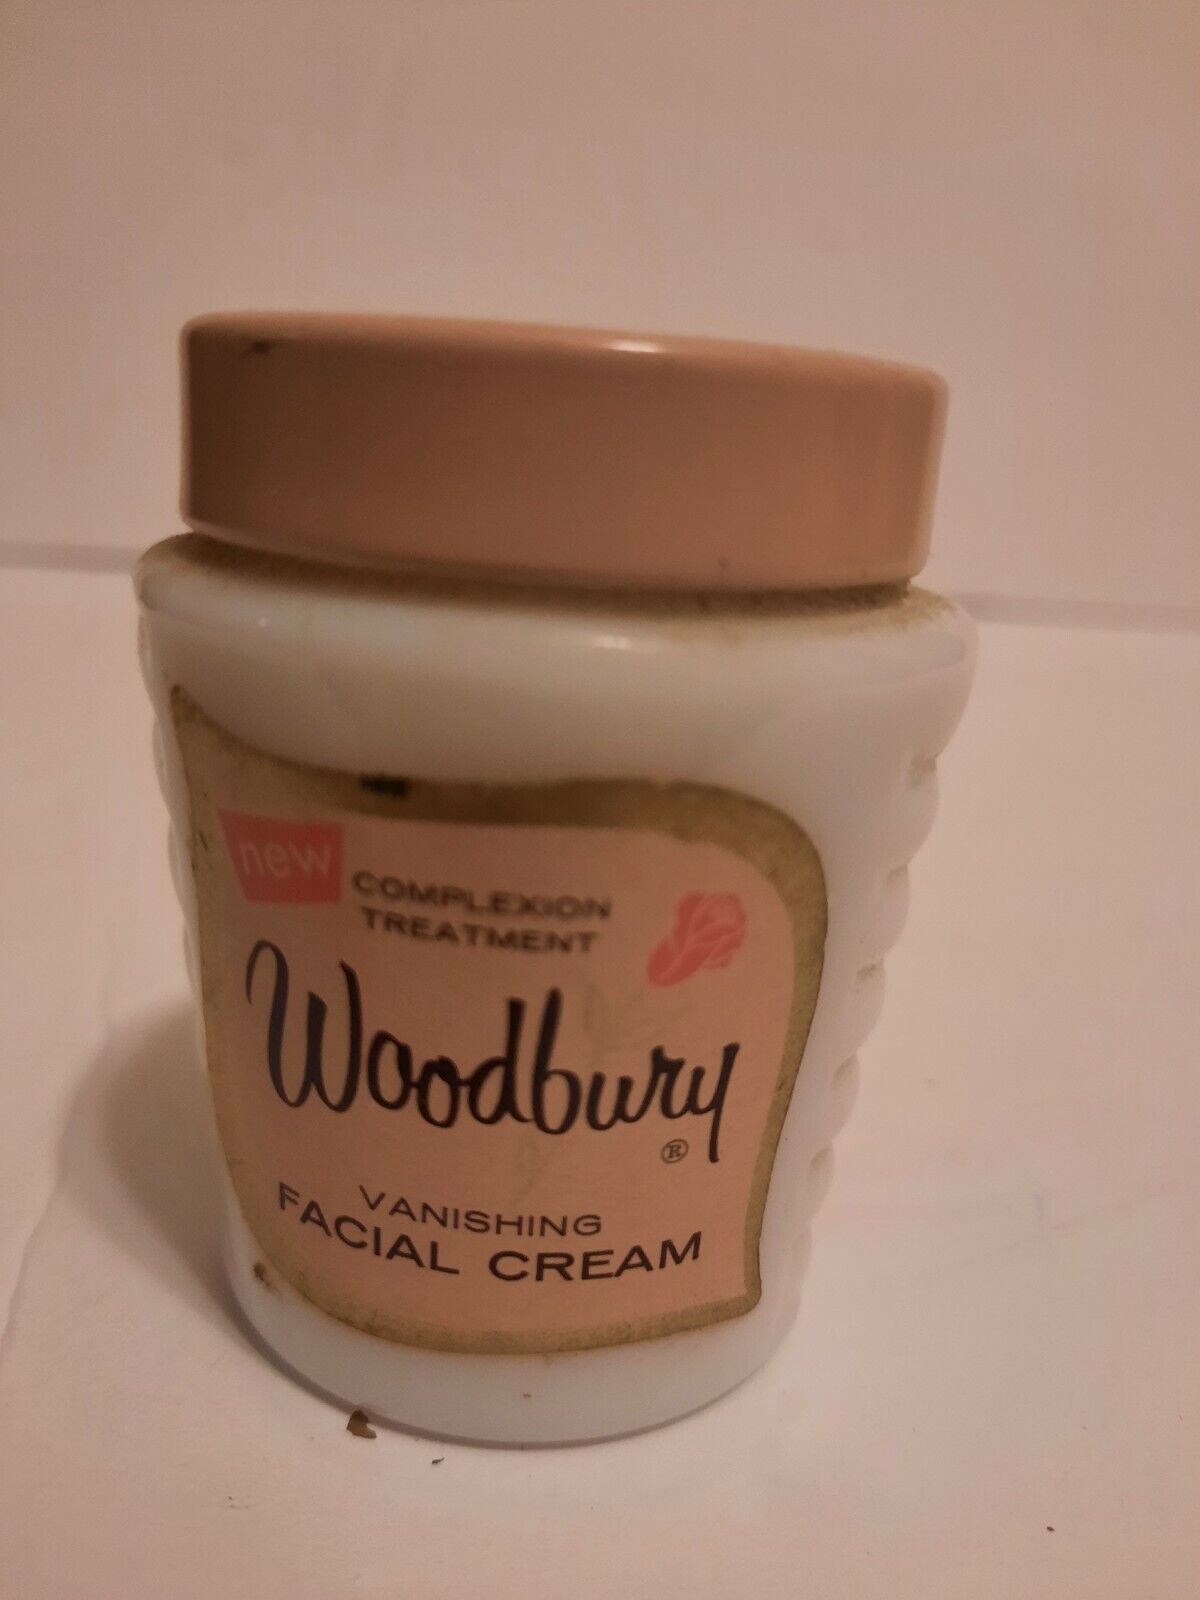 Vintage Woodbury Vanishing Facial Cream Pre-owned. 